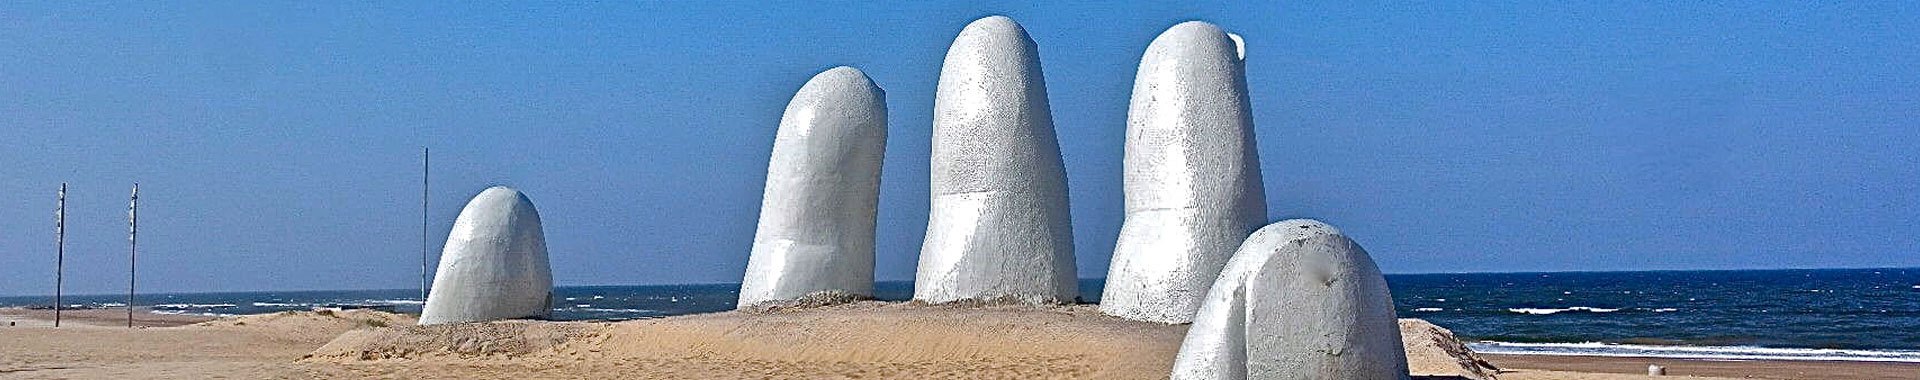 Uruguay - Punta del Este - Paquetes - Sol y Playa